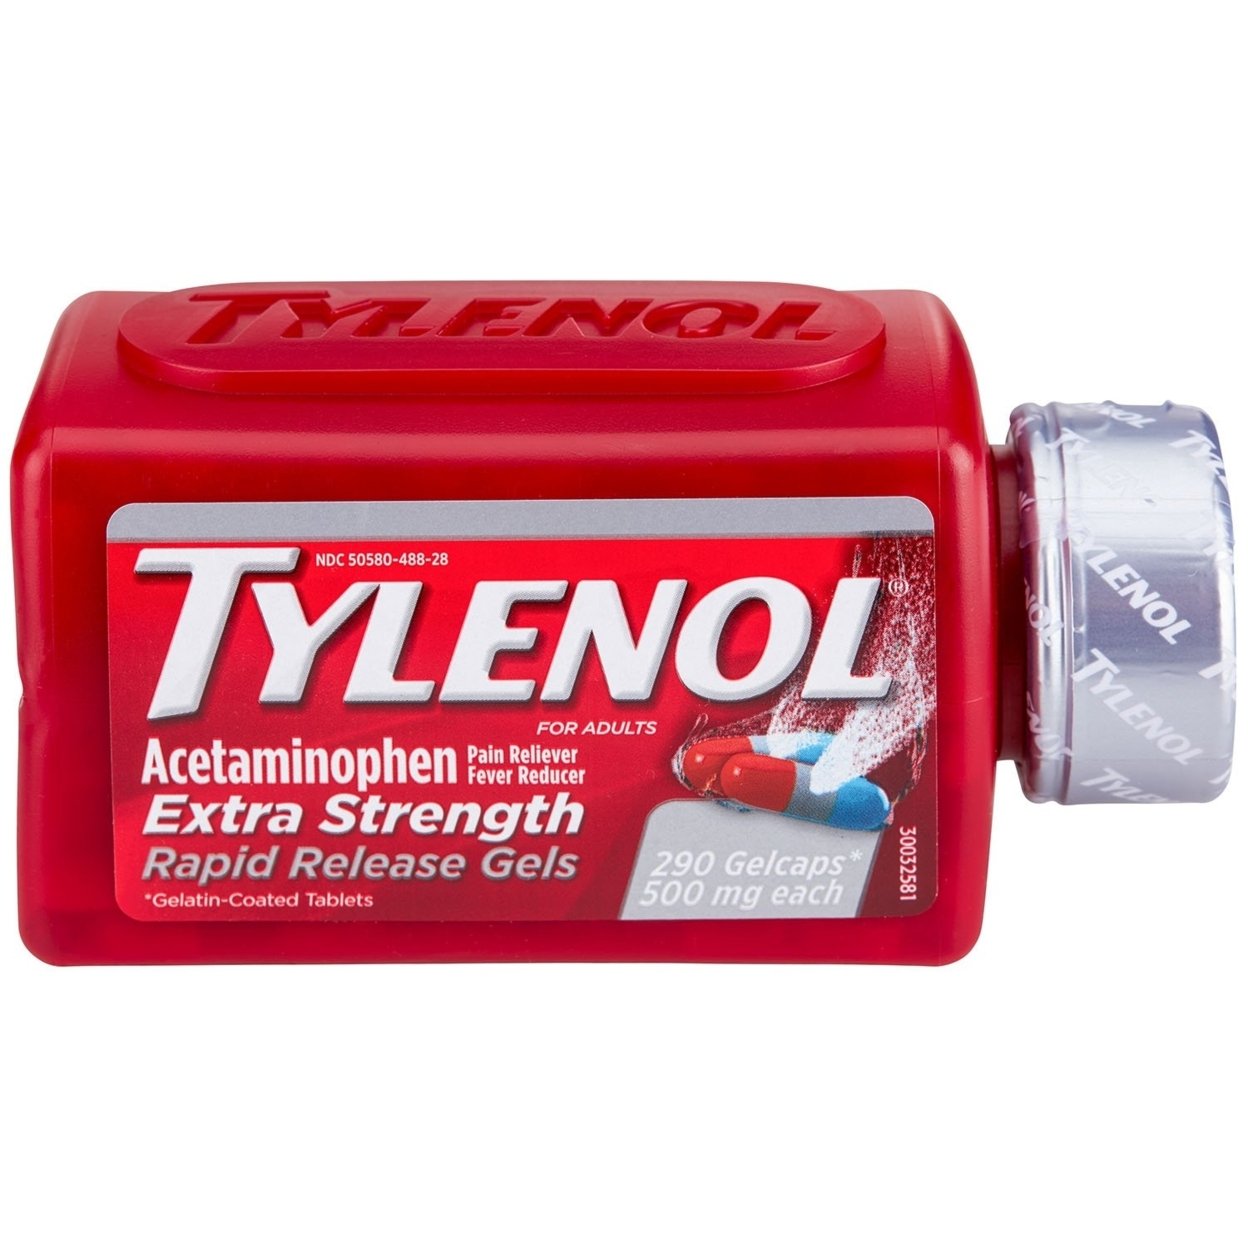 Tylenol Rapid Release Gels (290 Count)